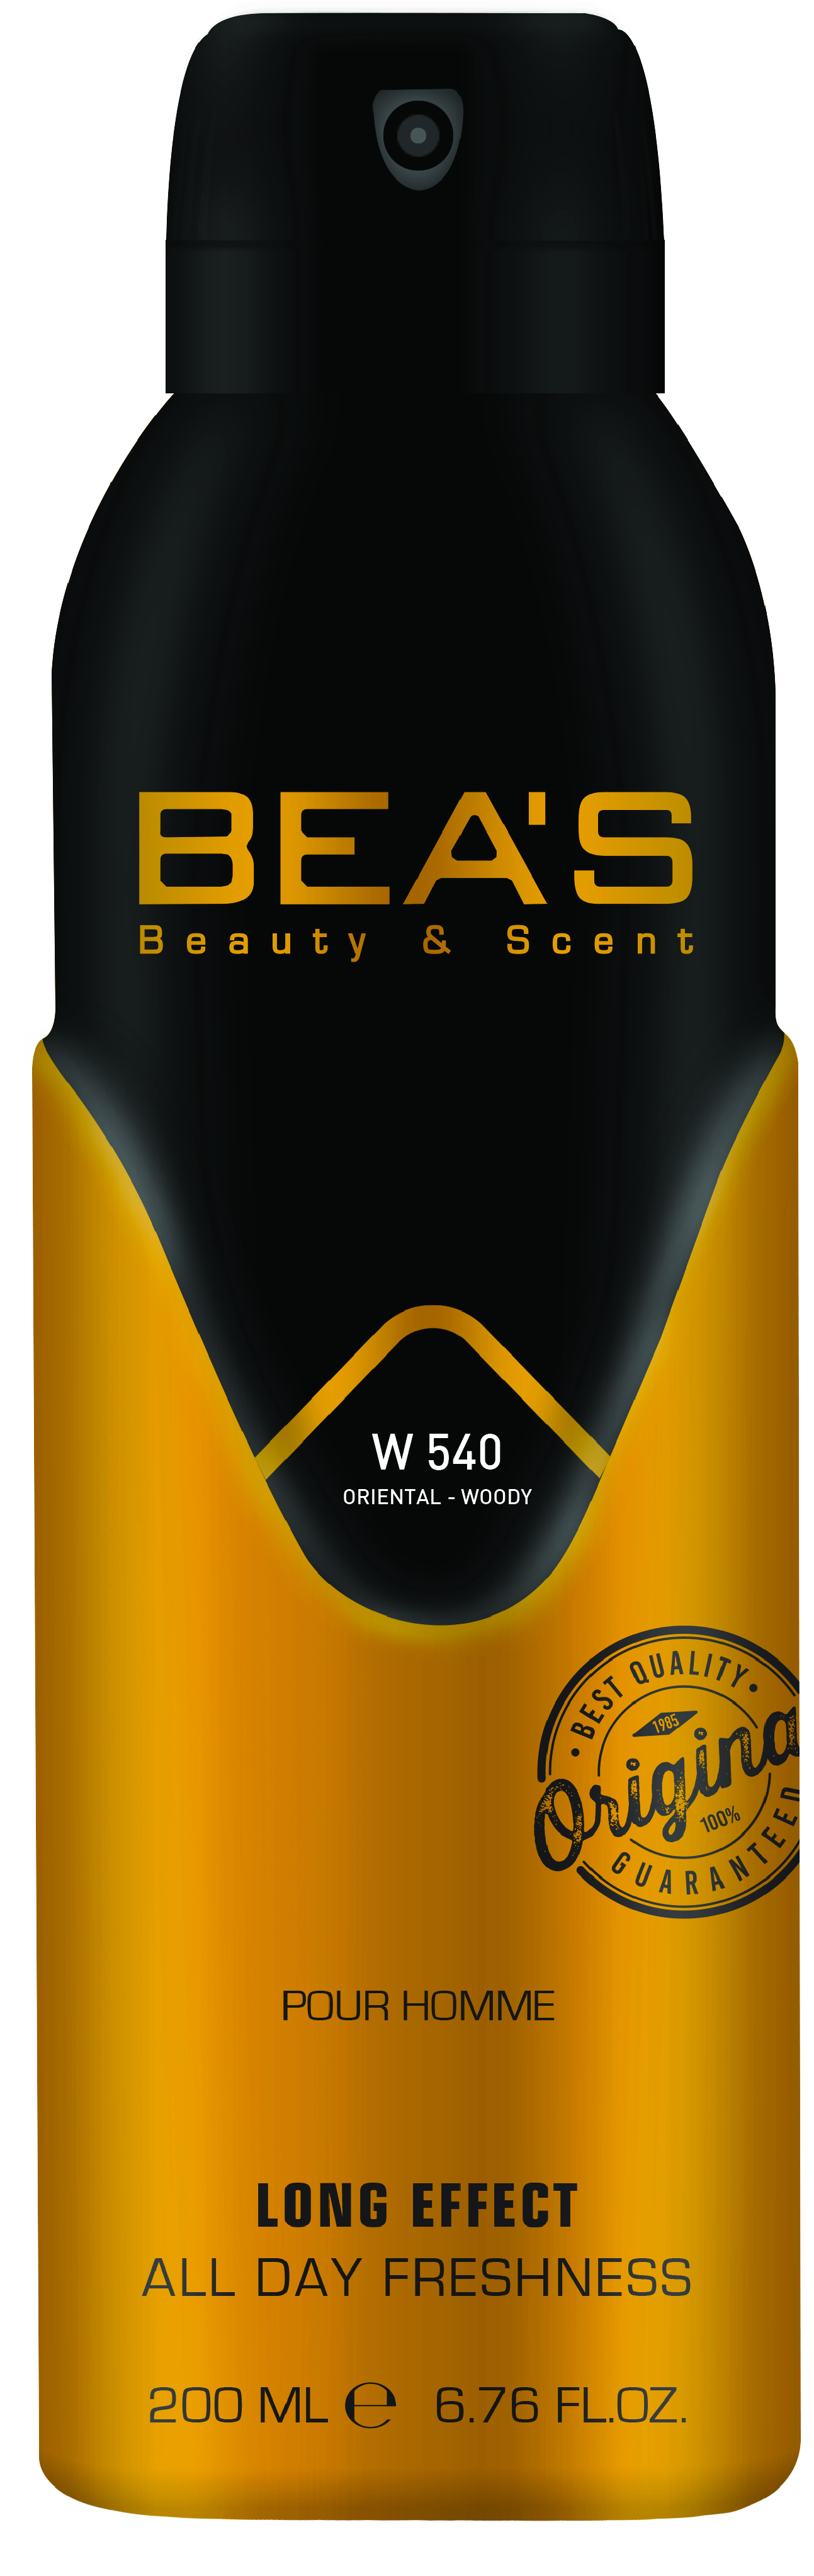 Купить Парфюмированный дезодорант Beas Tresor La Nuit Woman 200 мл W 540, Номерная парфюмерия